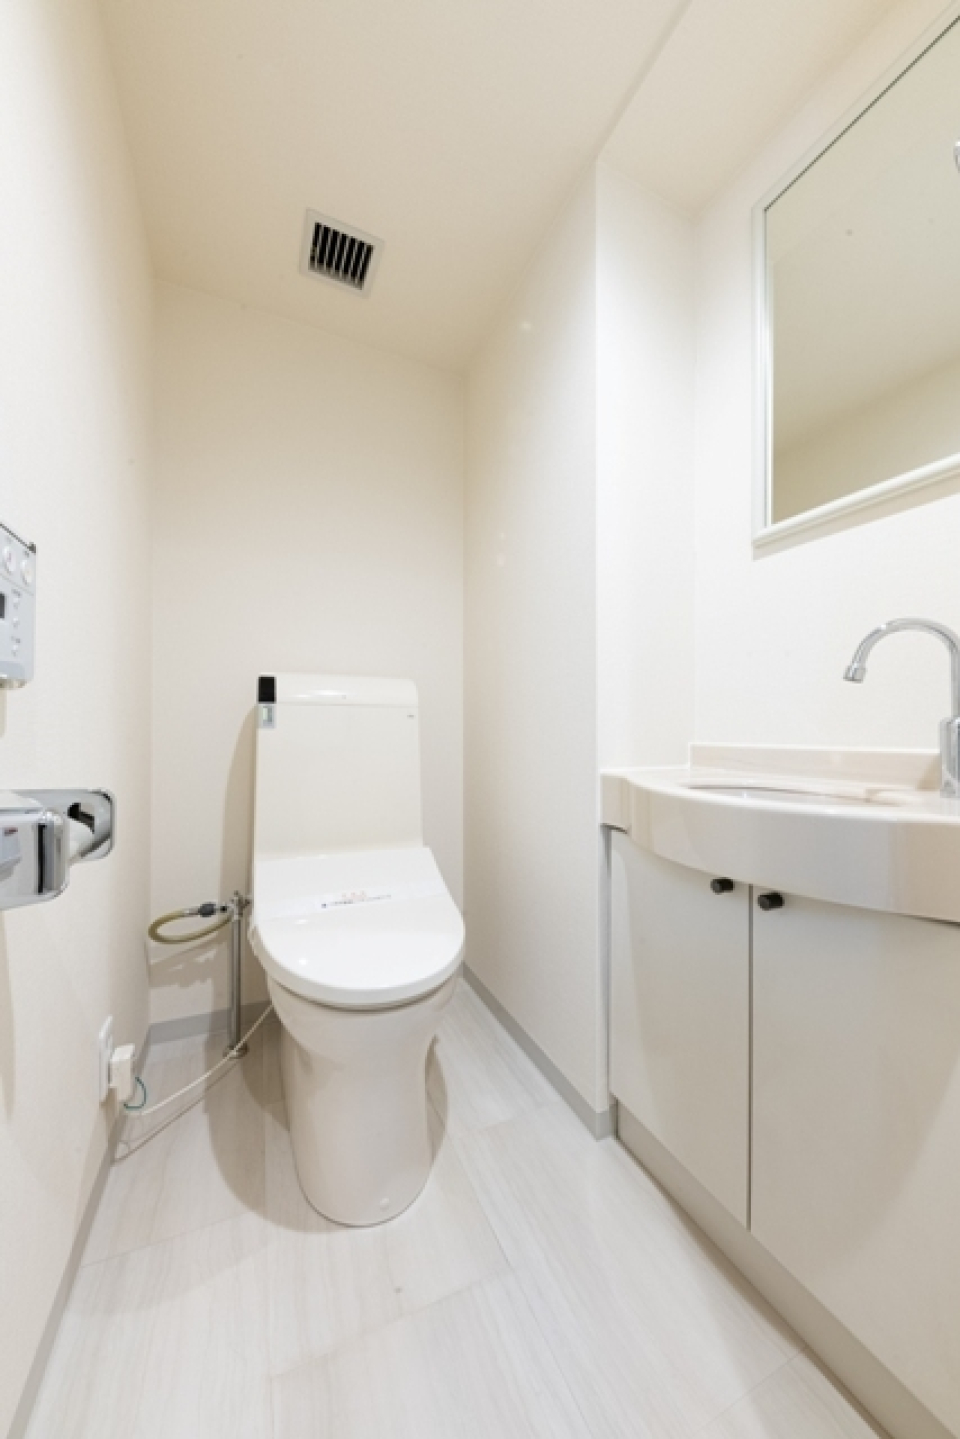 洗面所とトイレは同じ空間にあります。※写真は同タイプ住戸です。